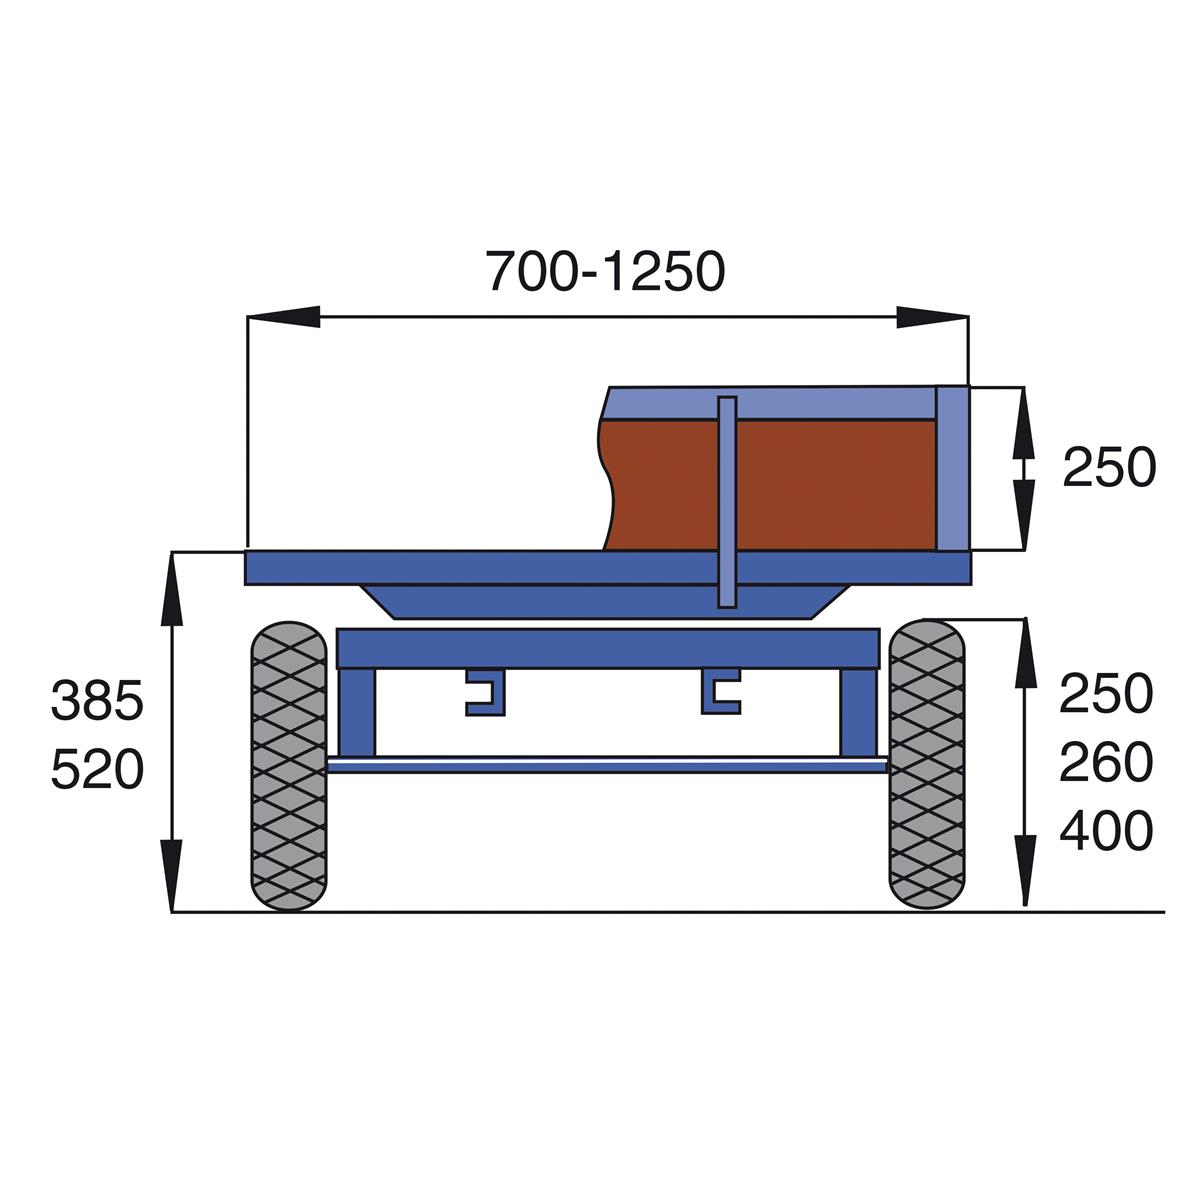 Handpritschenwagen, Traglast 1000 kg, Ladefläche 1600x900 mm, 4 Bordwände, Vollgummi-Räder, RAL 5010